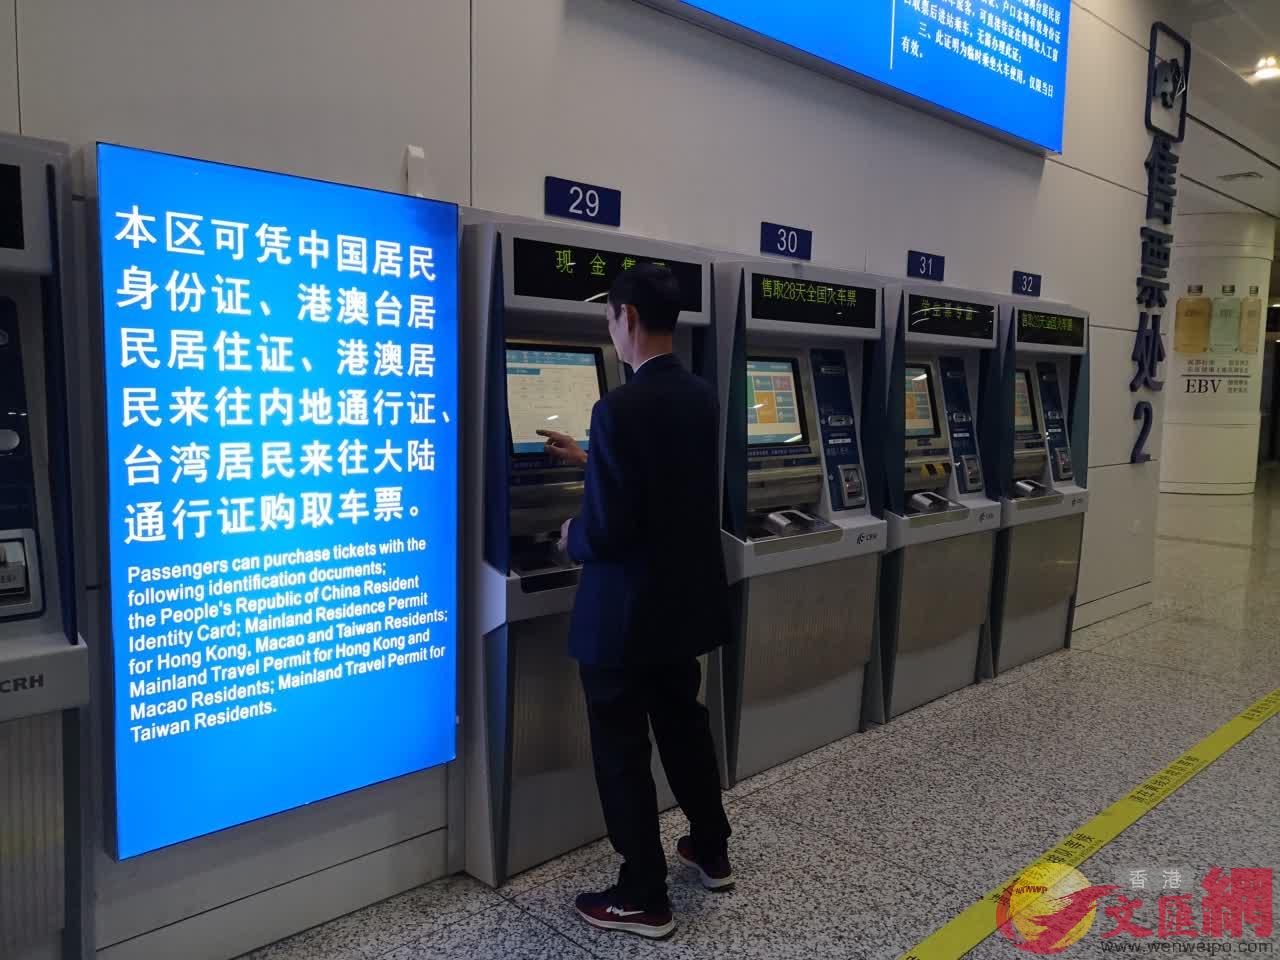 自動售票機可使用新版回鄉證購票和取票C]記者 郭若溪 攝^